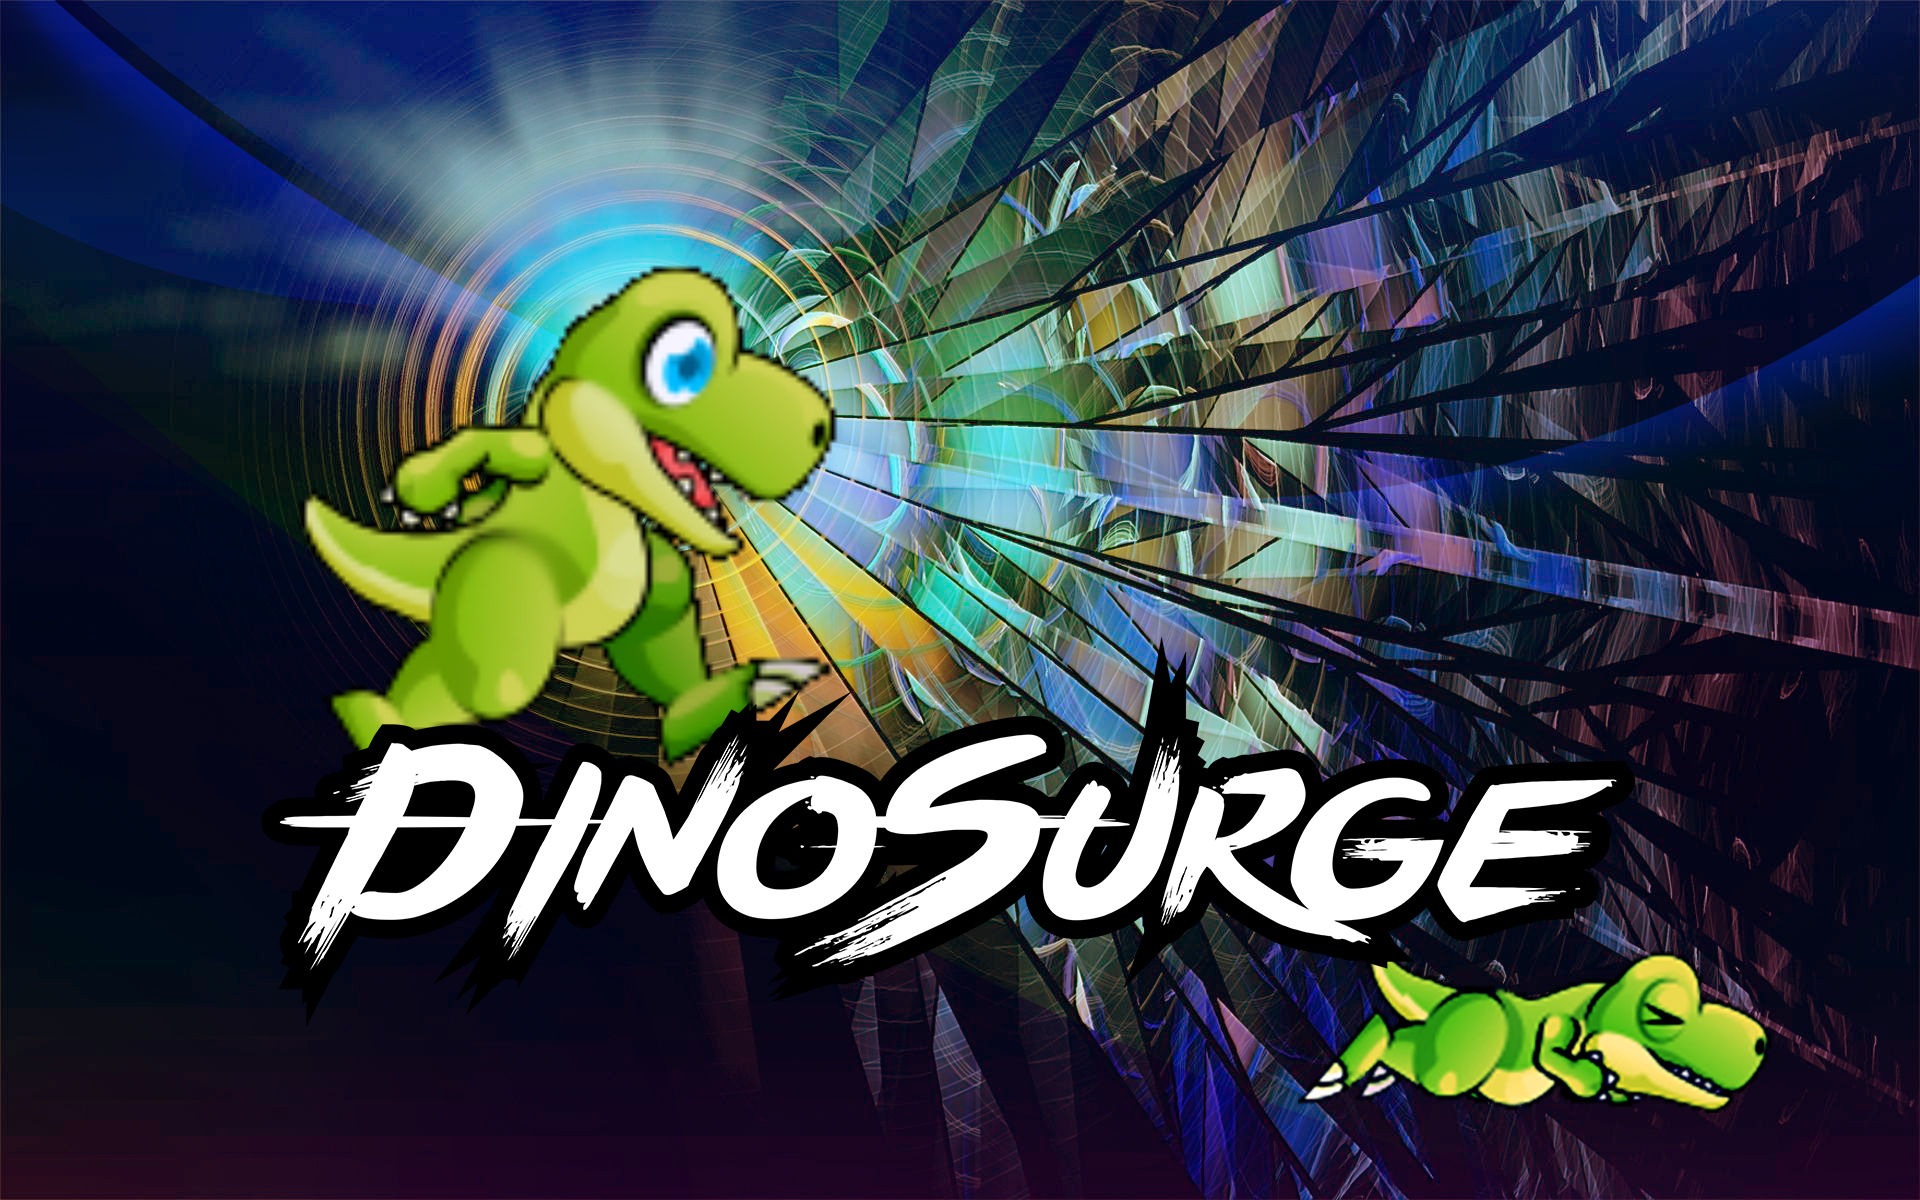 DinoSurge (run dino run)